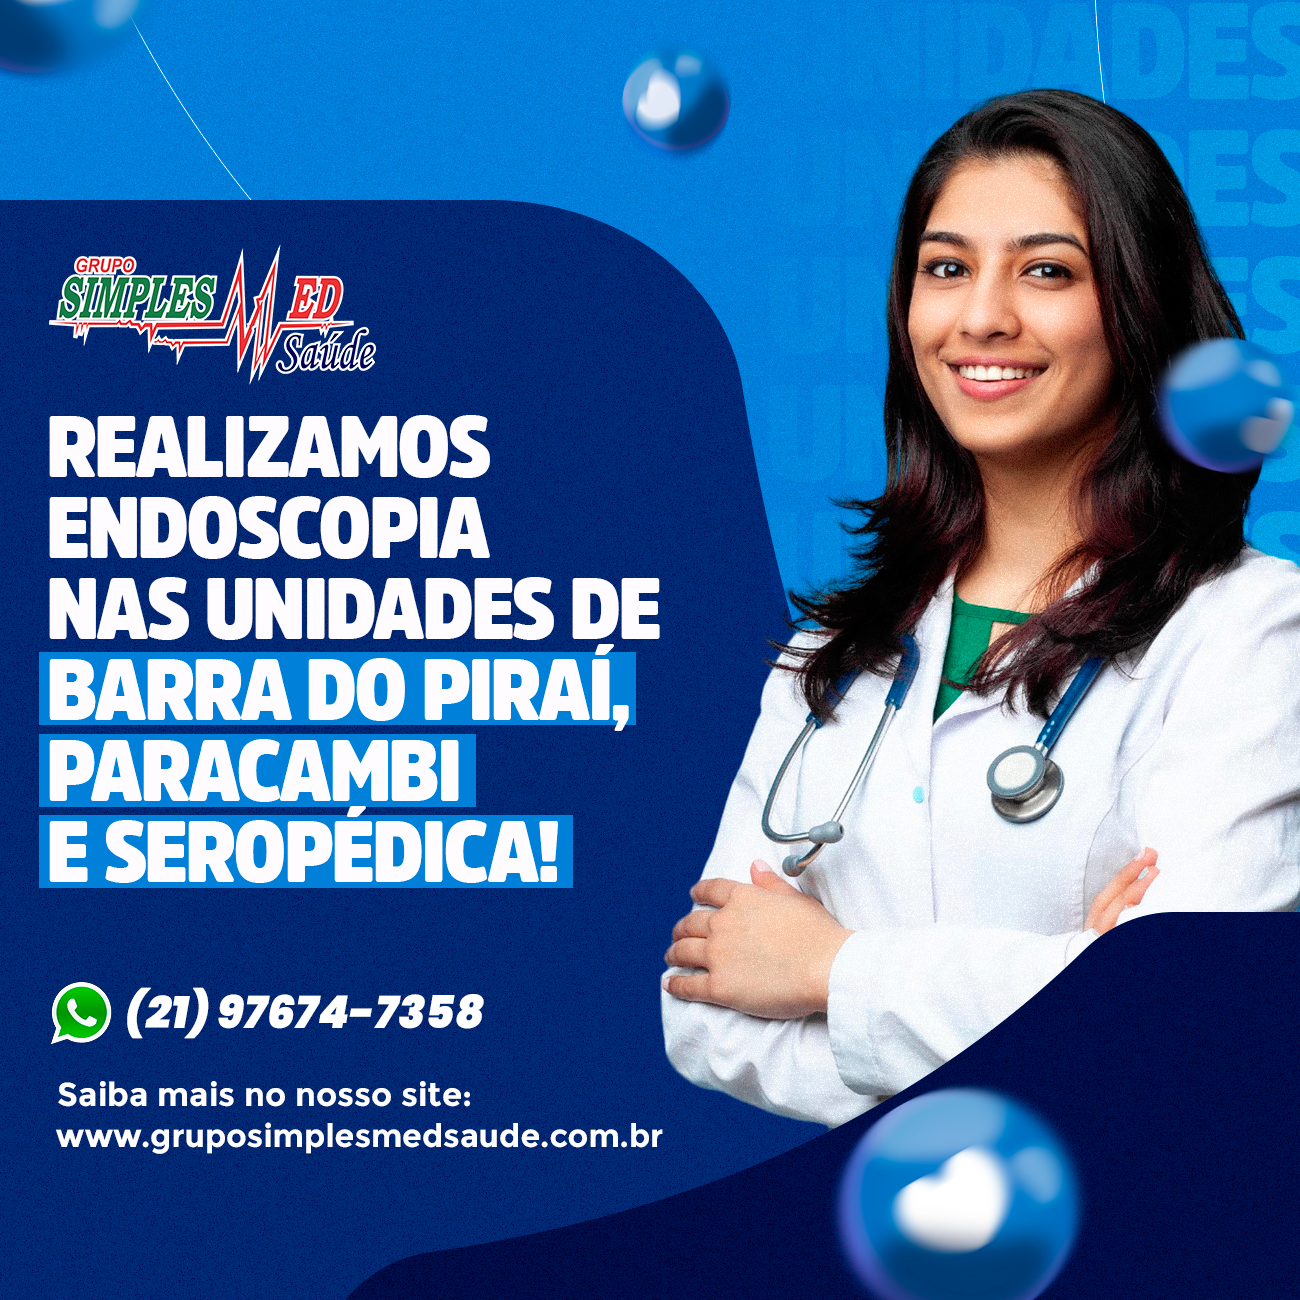 Realizamos endoscopia nas unidades de Barra do Piraí, Paracambi e Seropédica.